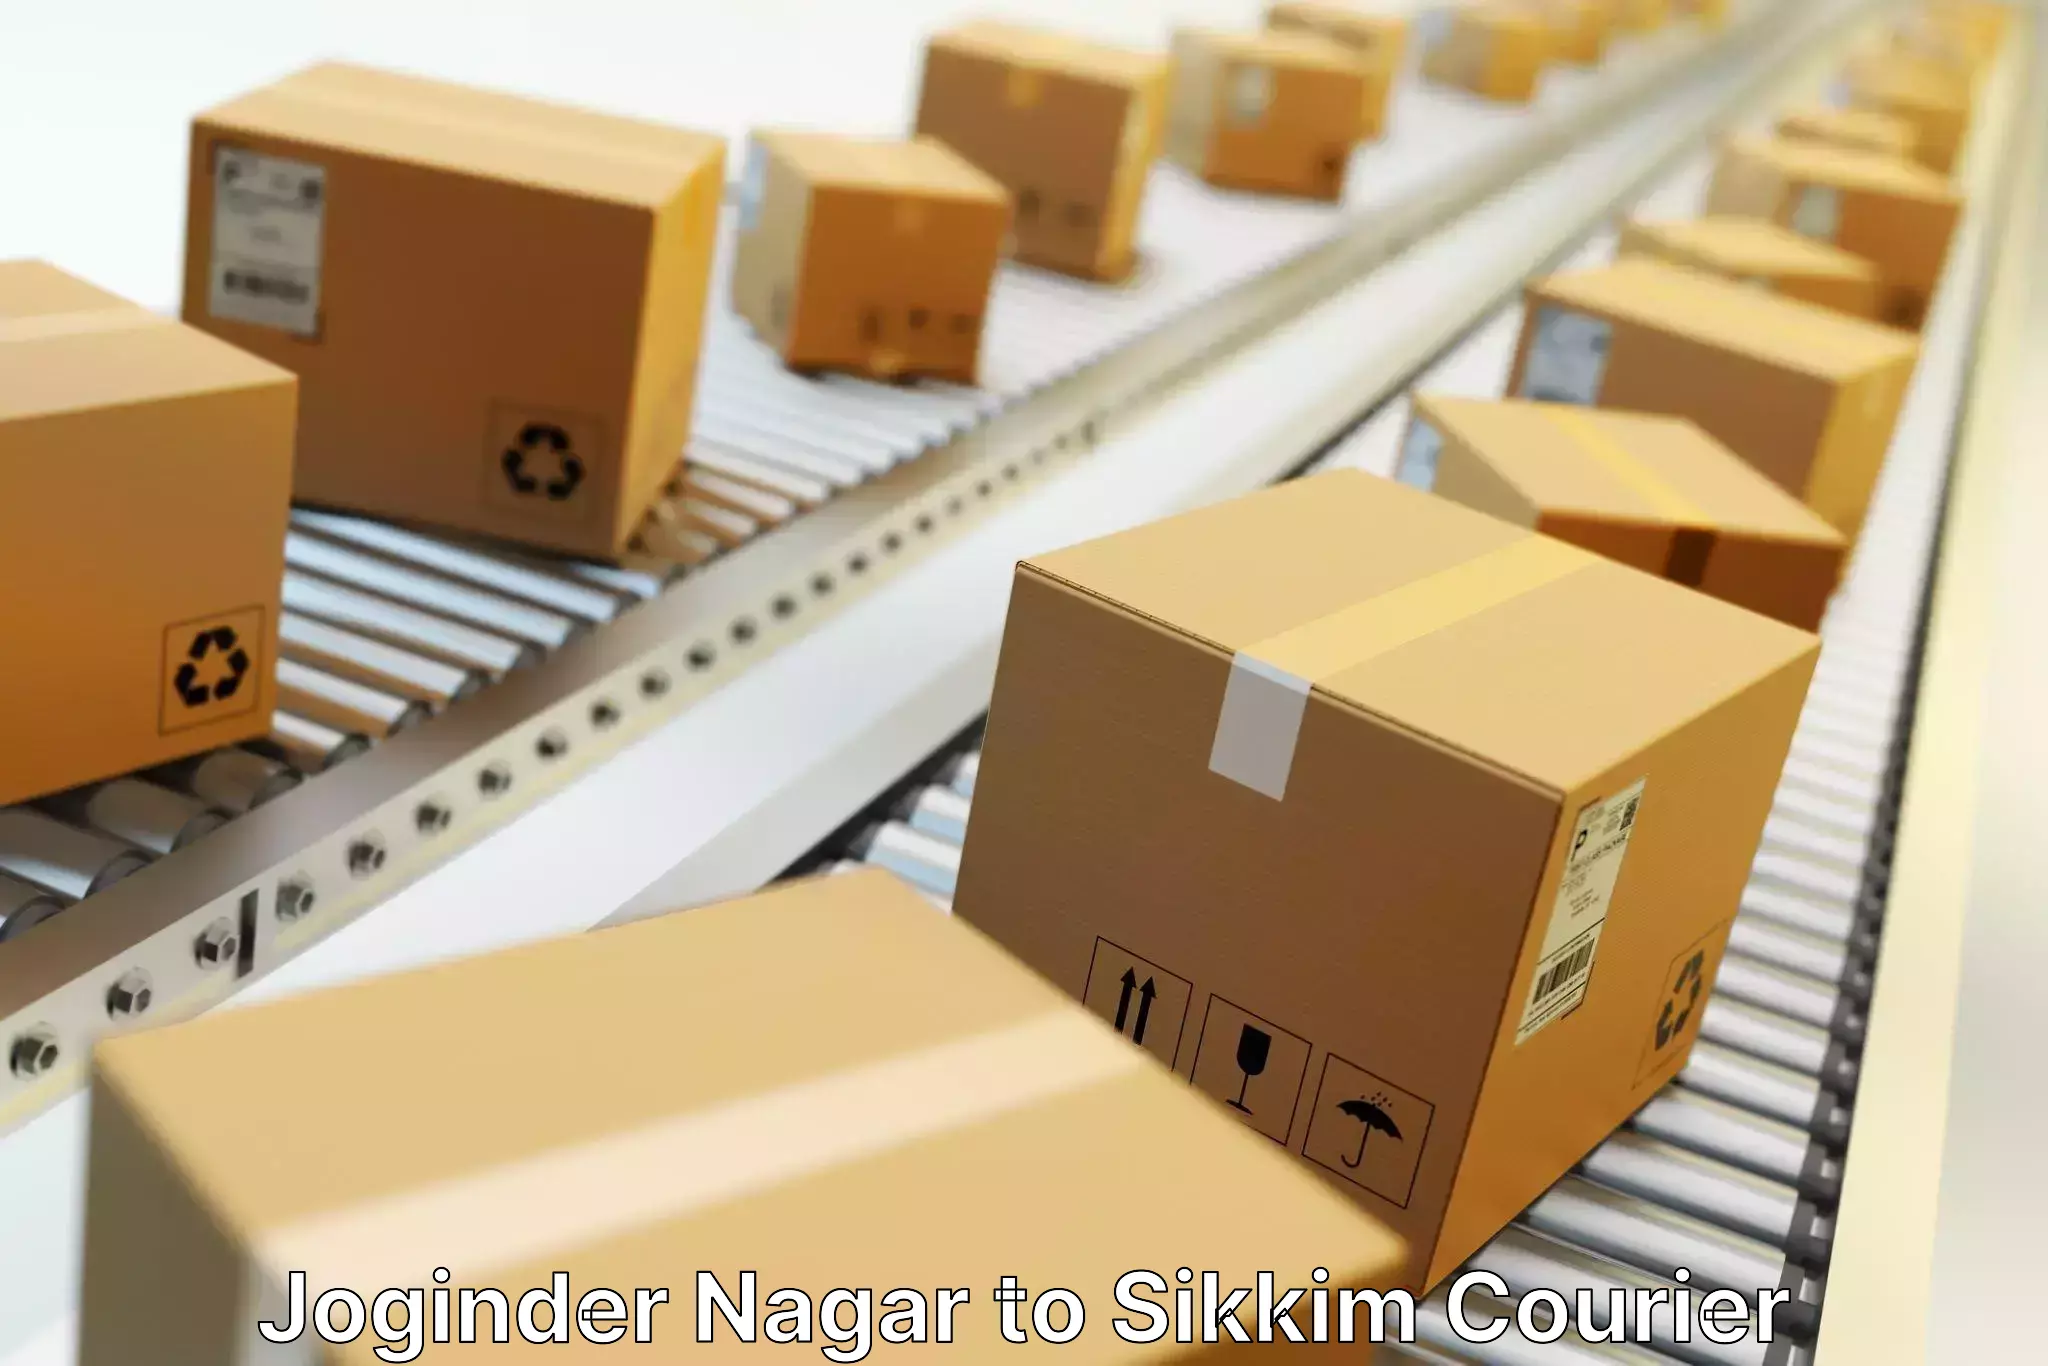 Global freight services Joginder Nagar to Mangan